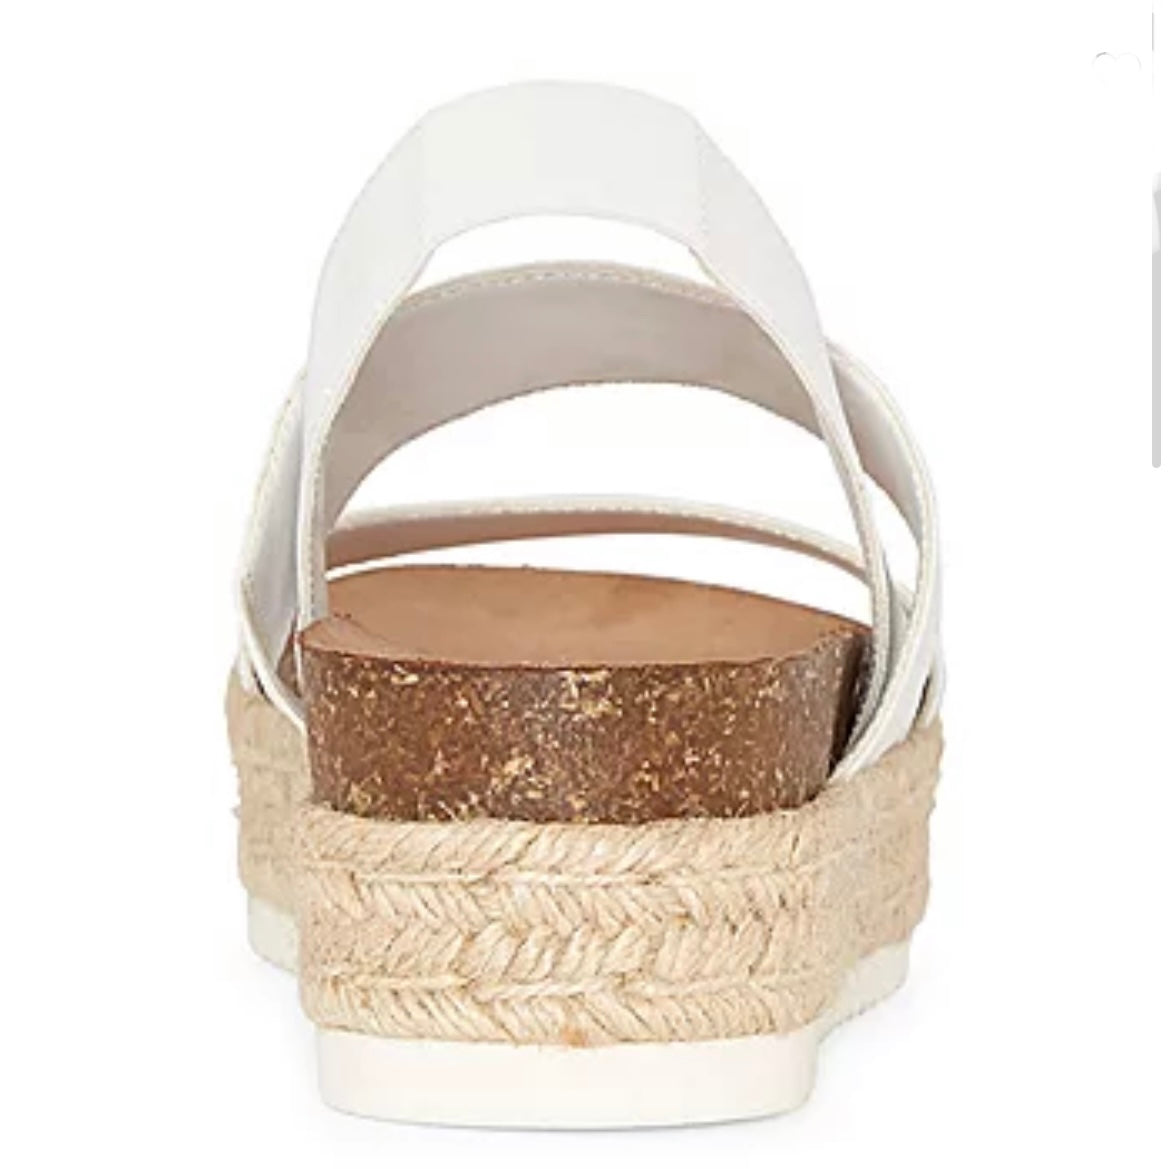 Coy White Size 10 M Slip On Open Toe Women's Wedge Sandals